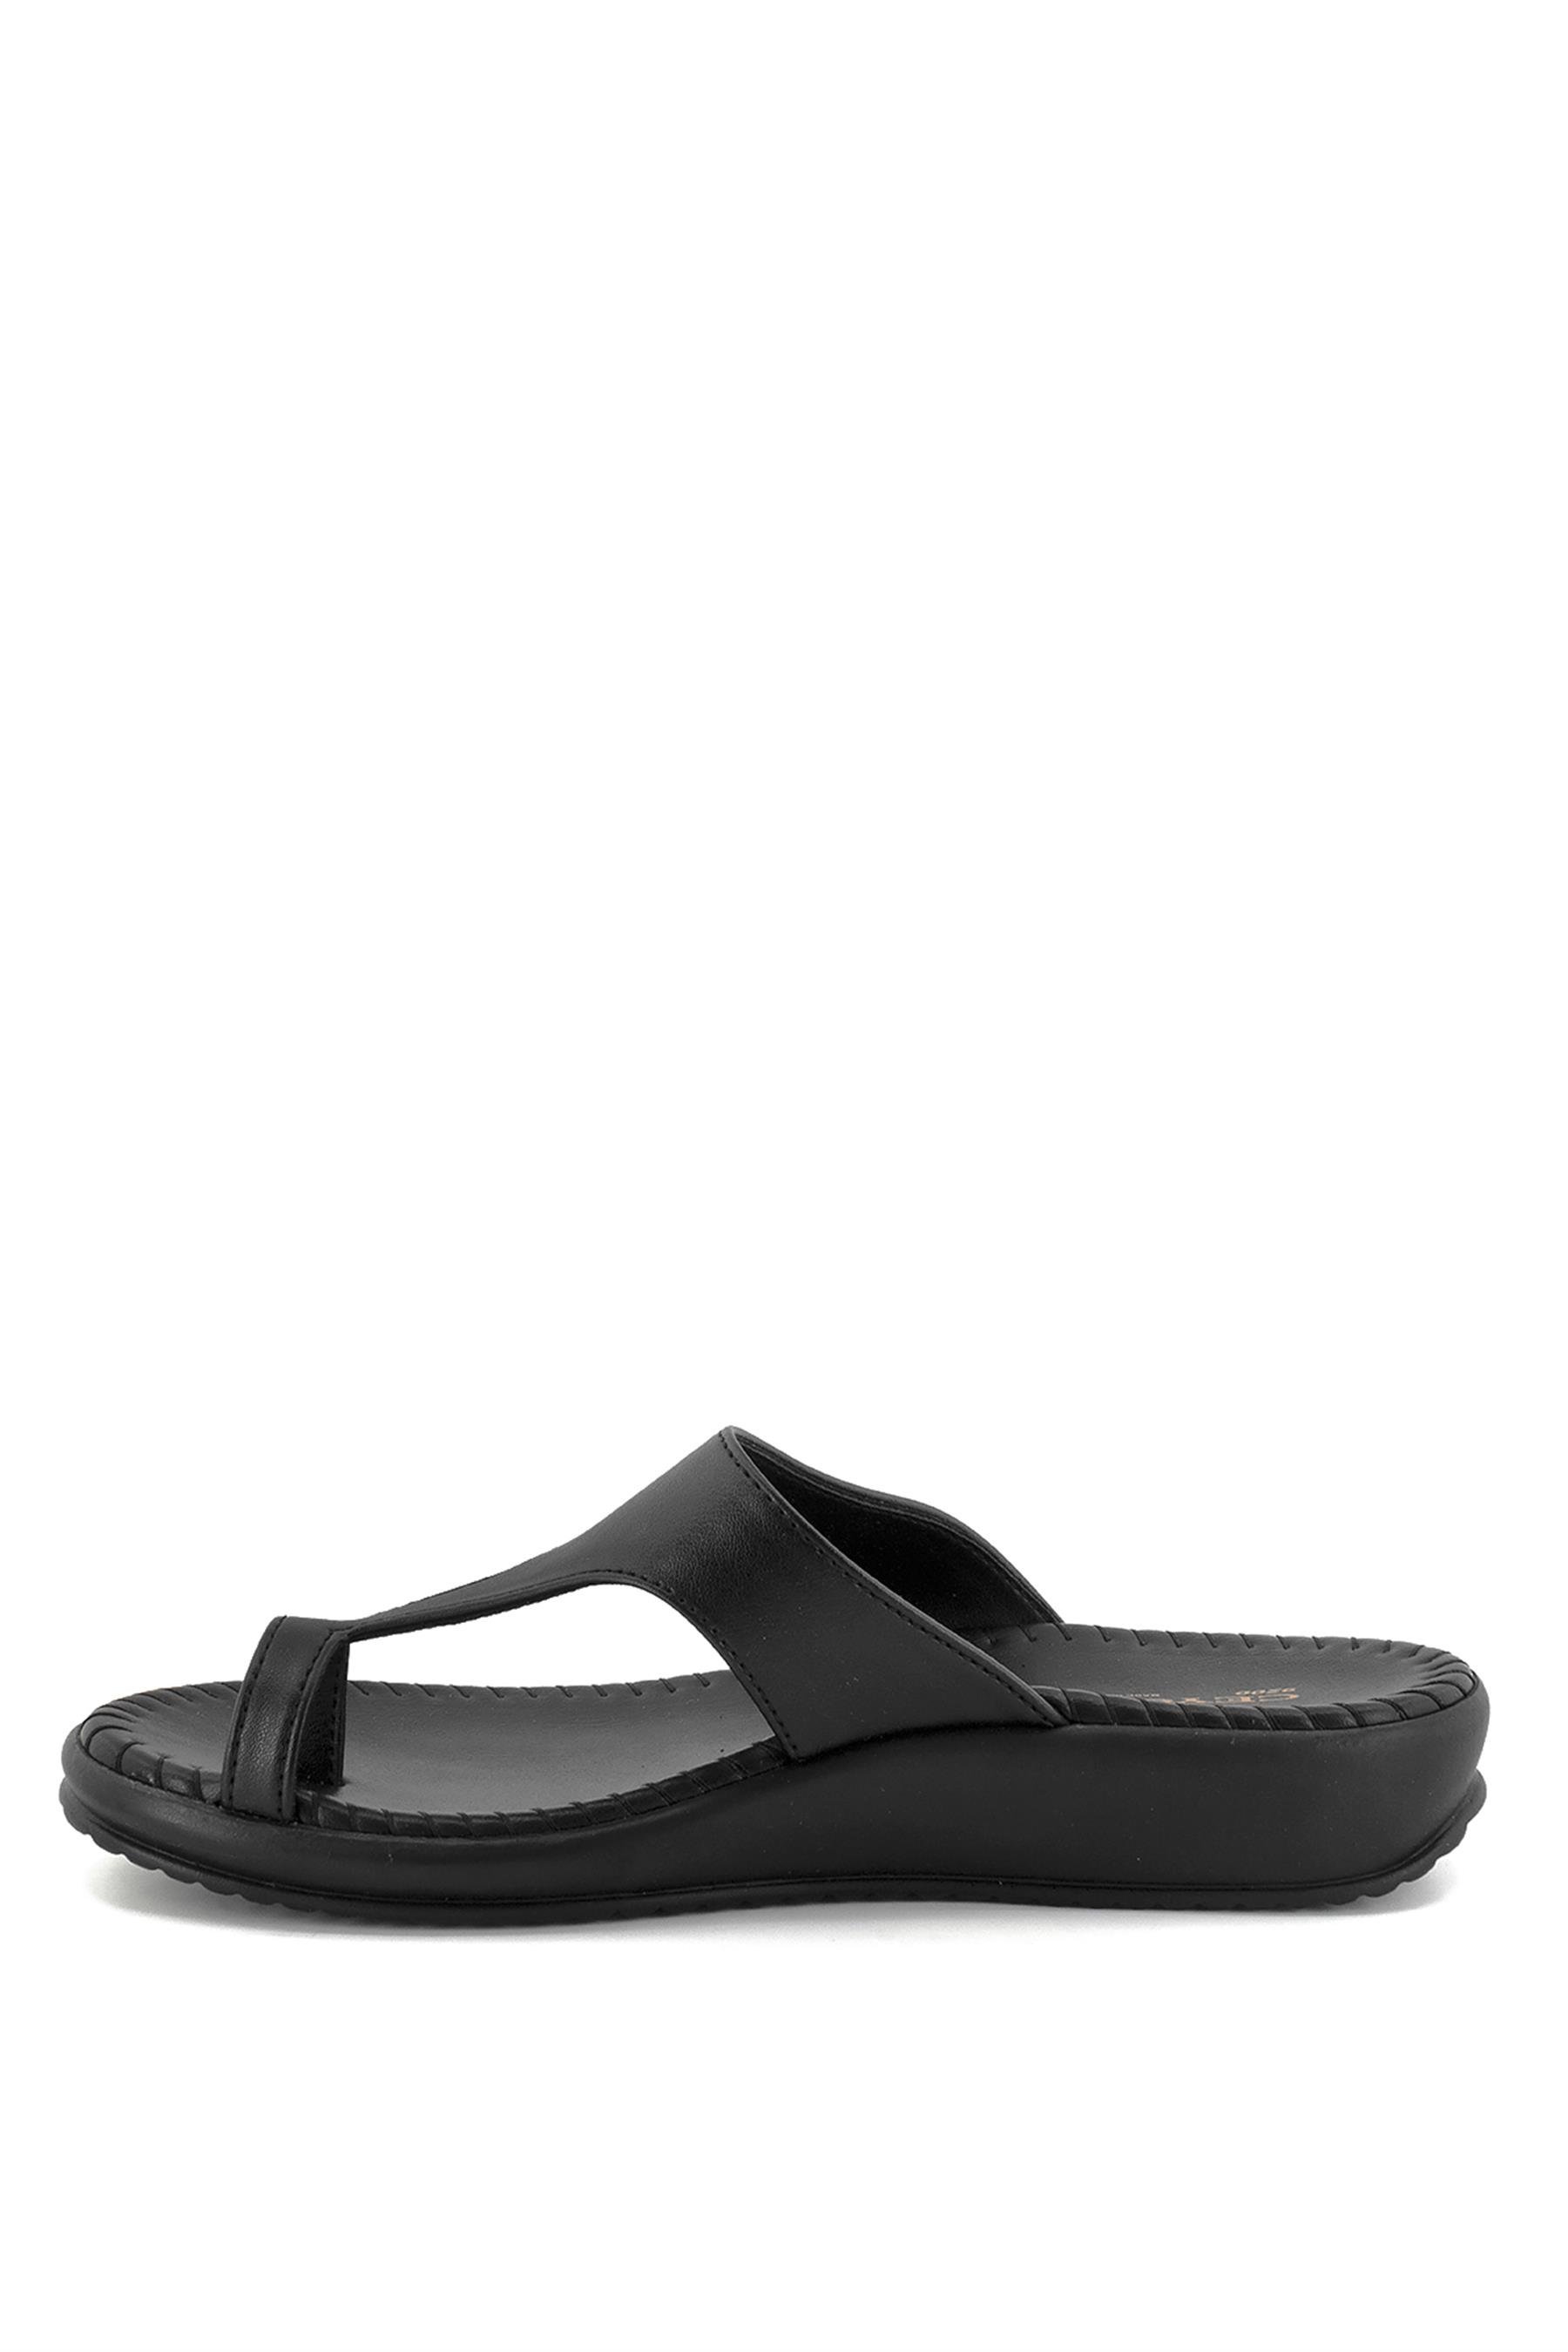 Ceyo 9200-2 Kadın Terlik Siyah - Ayakkabı Fuarı Elit